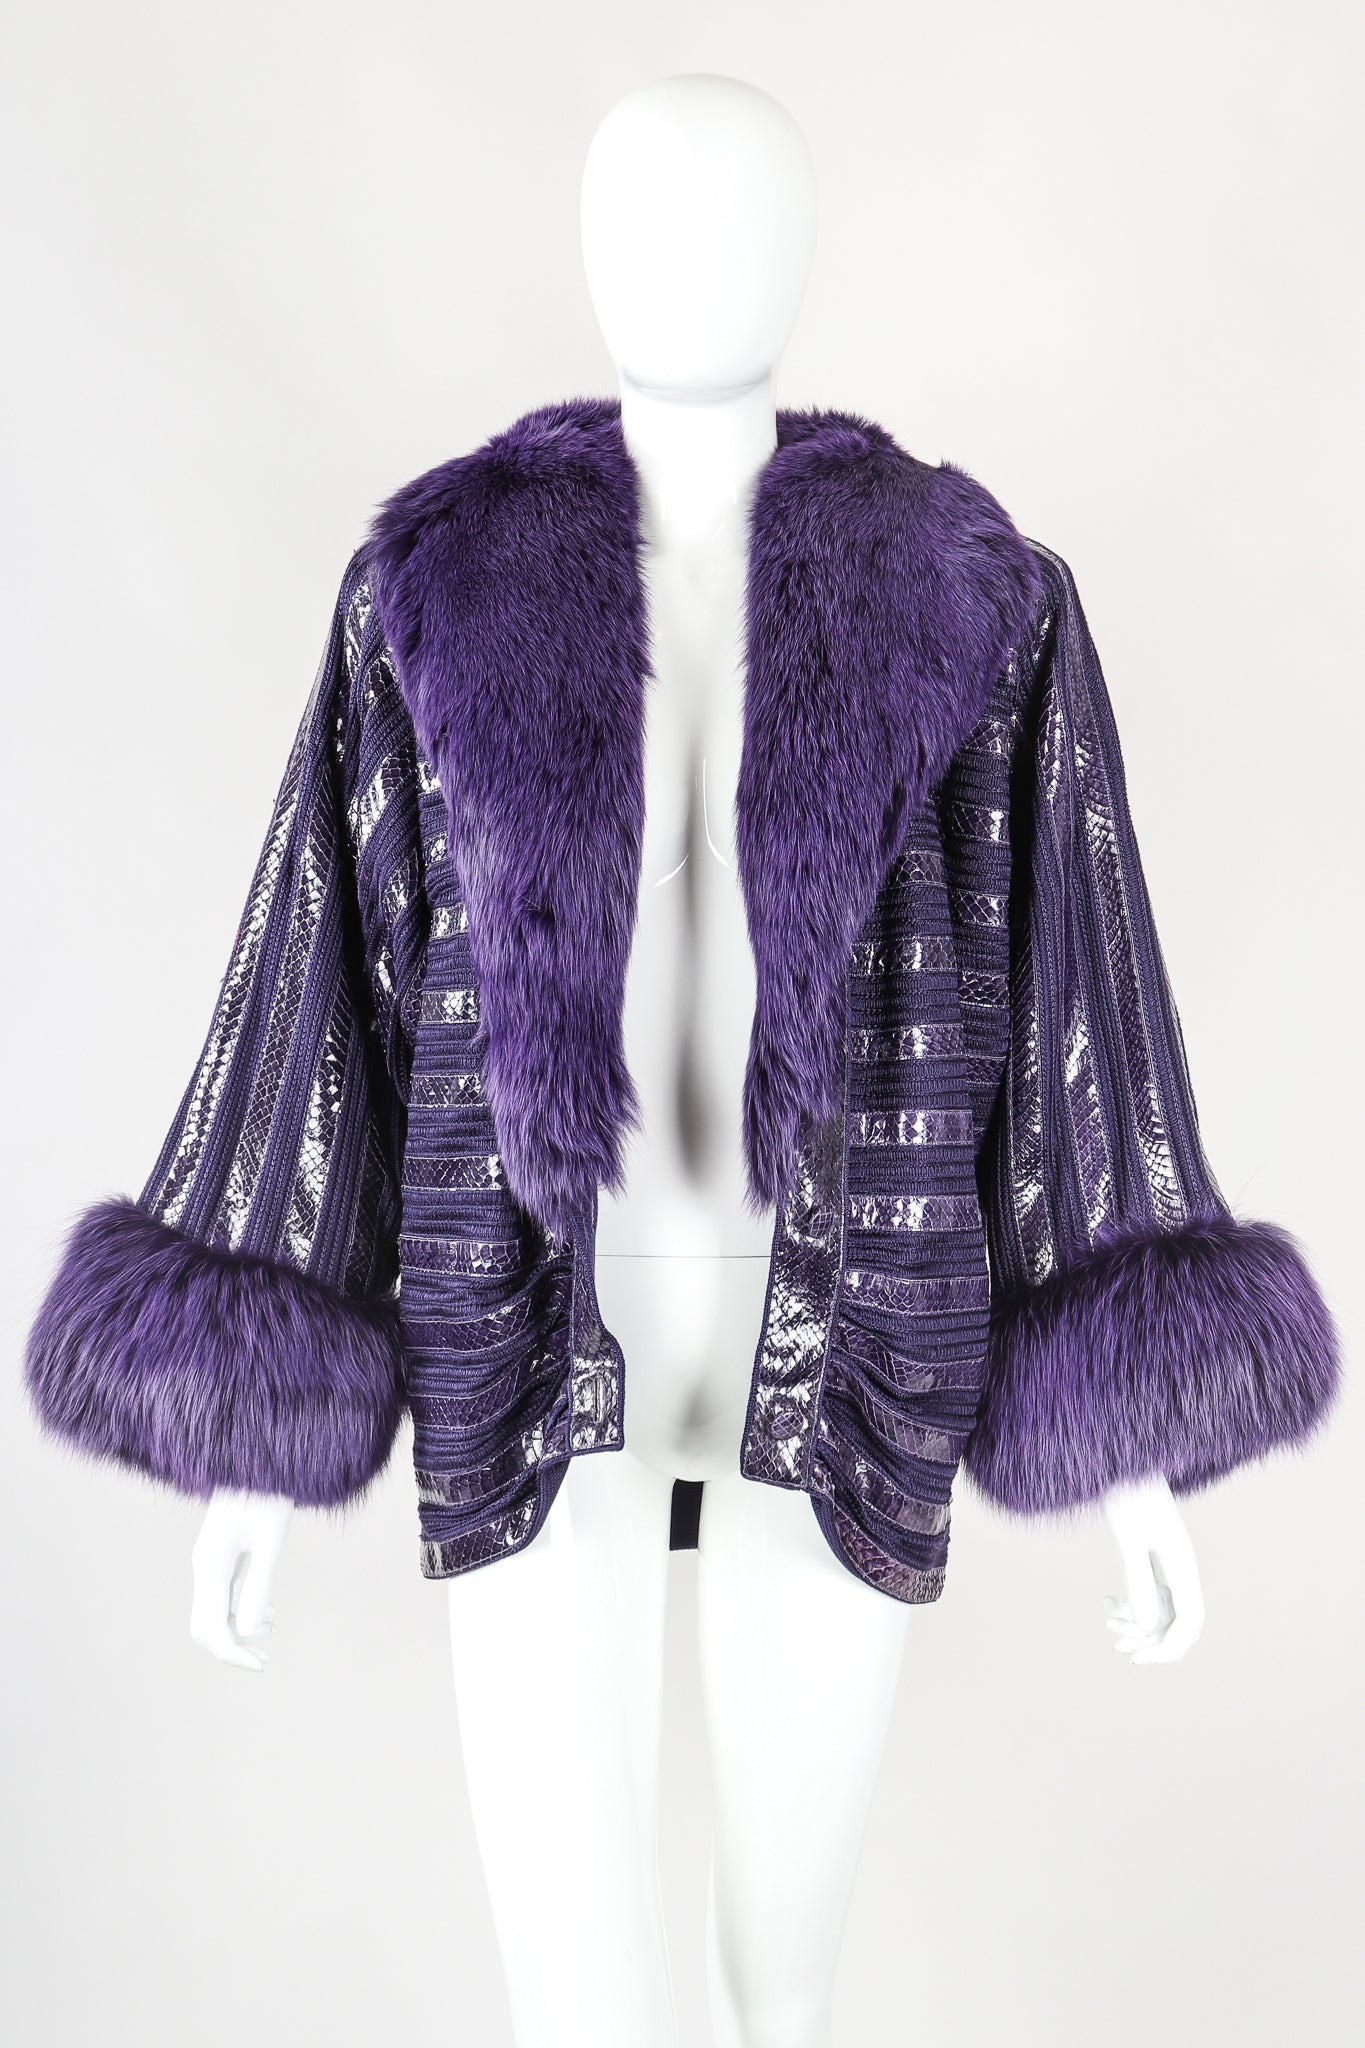 Recess Designer Consignment Vintage Beltrami Fur Collar Snakeskin Knit Stripe Batwing Jacket Los Angele Resale